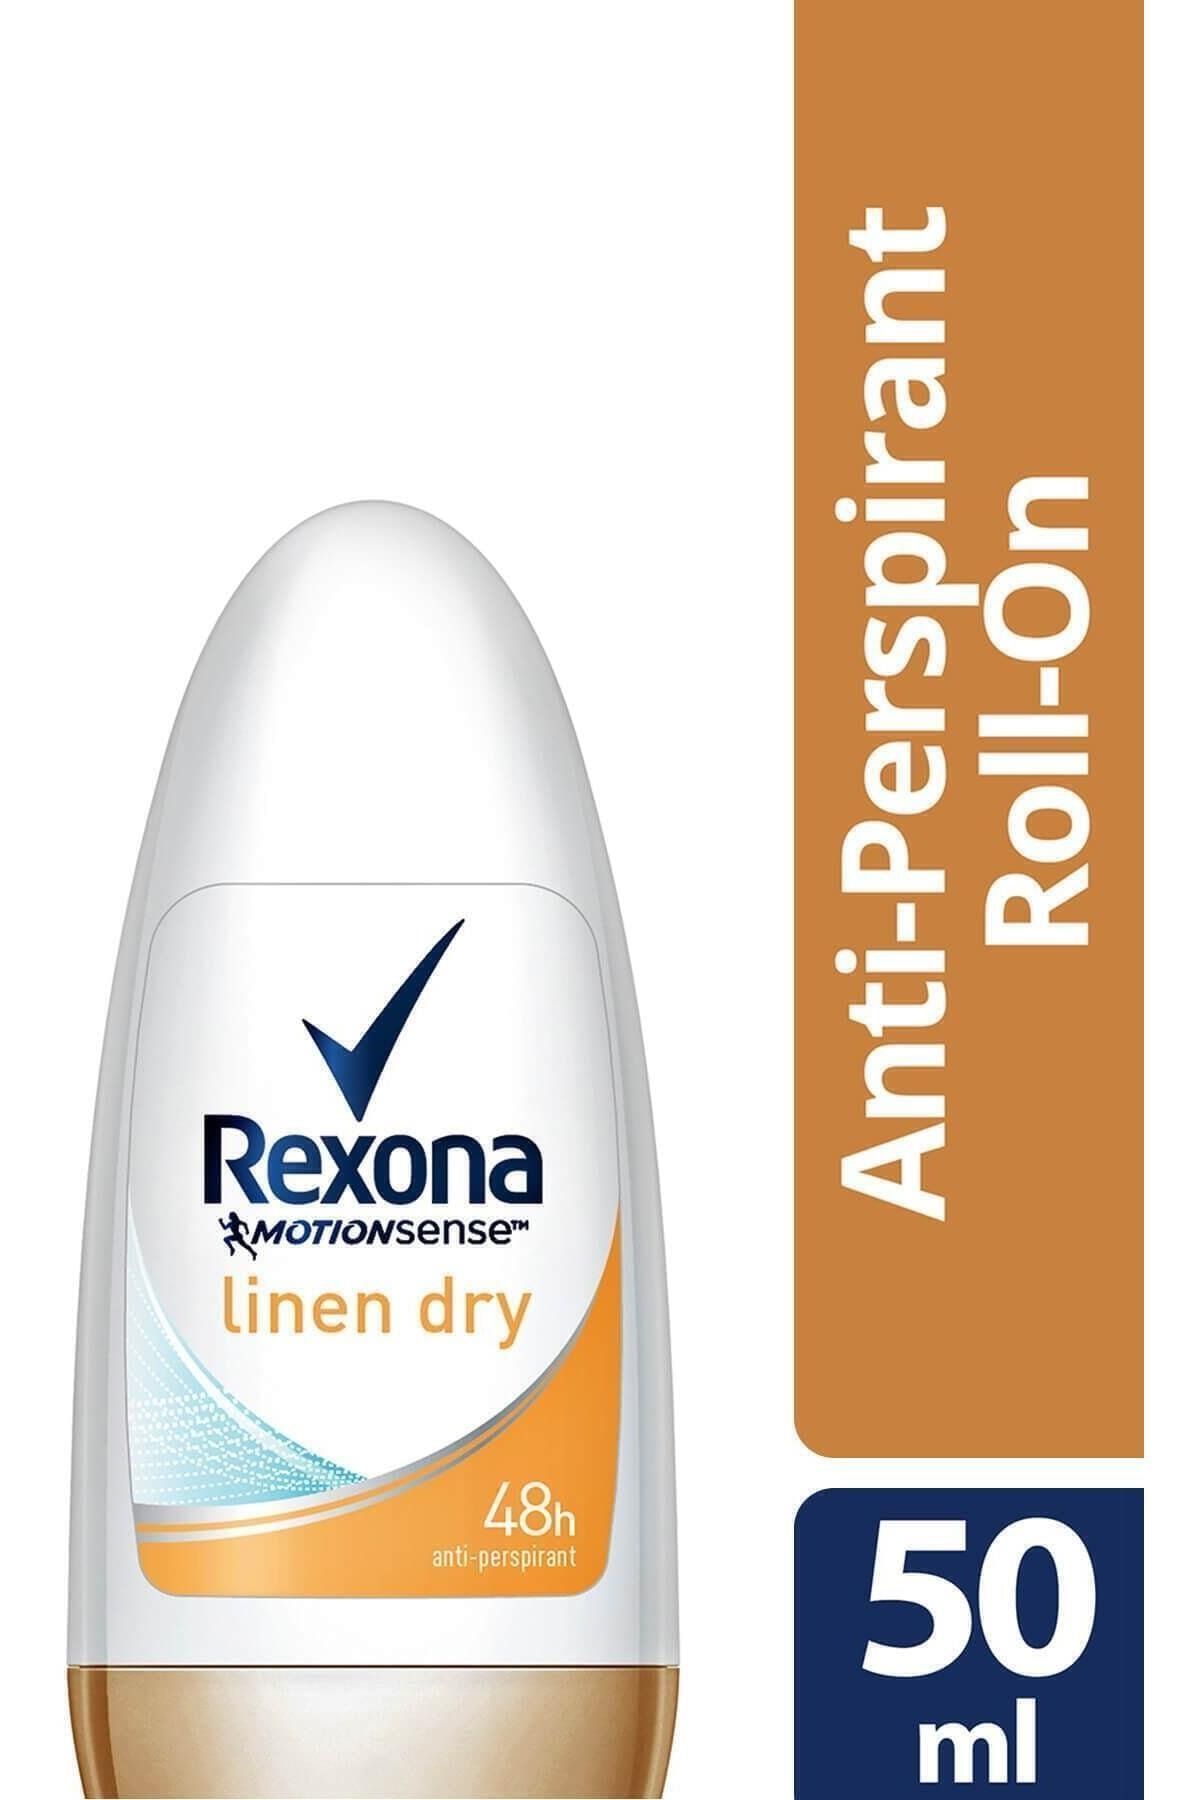 Rexona Kadın Linen Dry Deodorant Rolon 50 ml